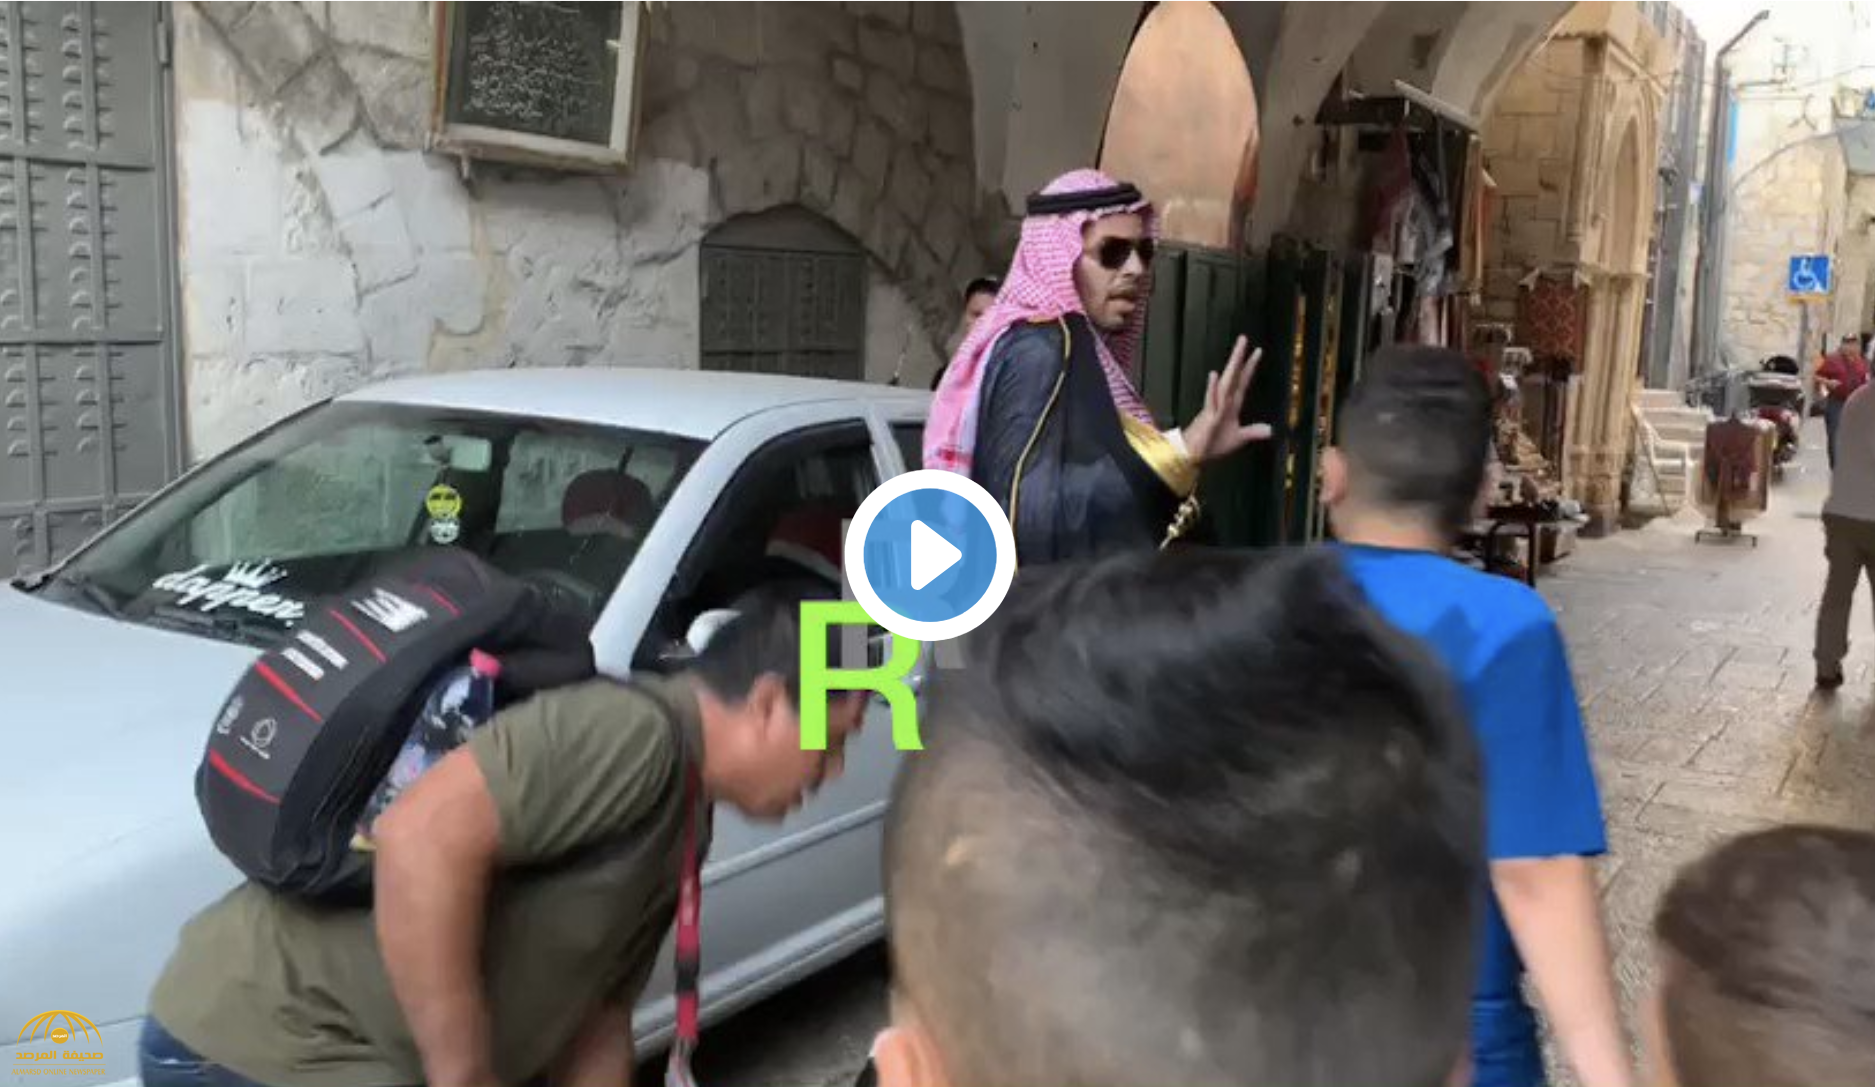 شاهد .. فلسطينيون يعتدون على سعودي بـ"الشتم والبصق" بسبب زيارته القدس وصلاته في الأقصى